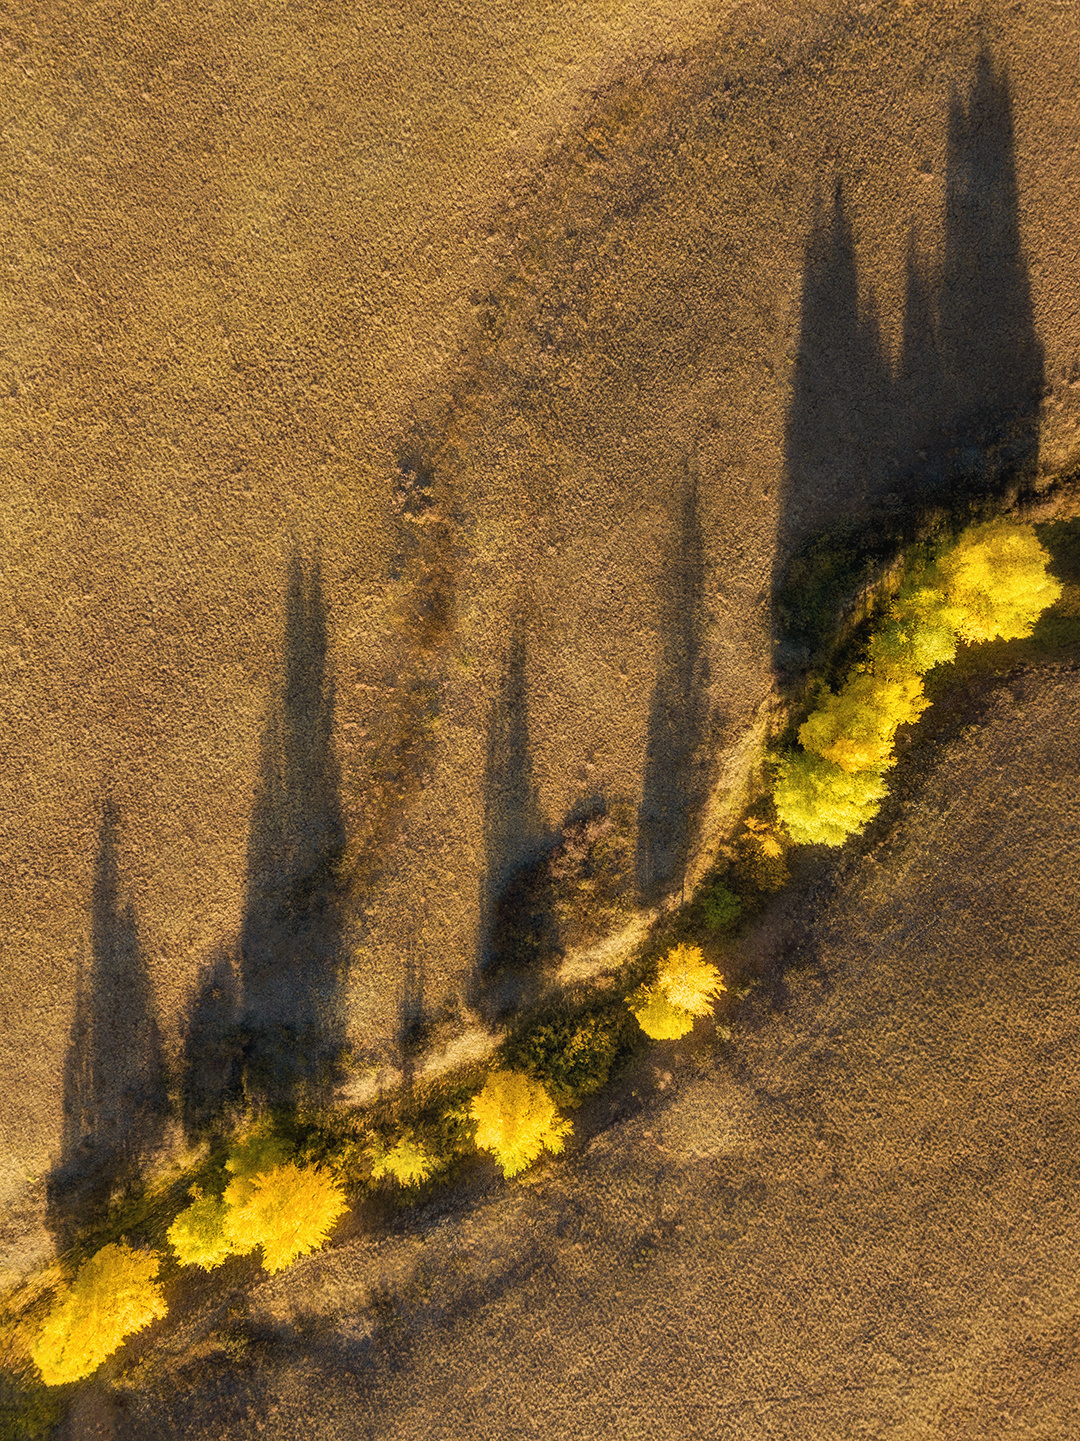 Осенняя линия екатеринбург урал фототур яковлевфототур василийяковлев долгие горы